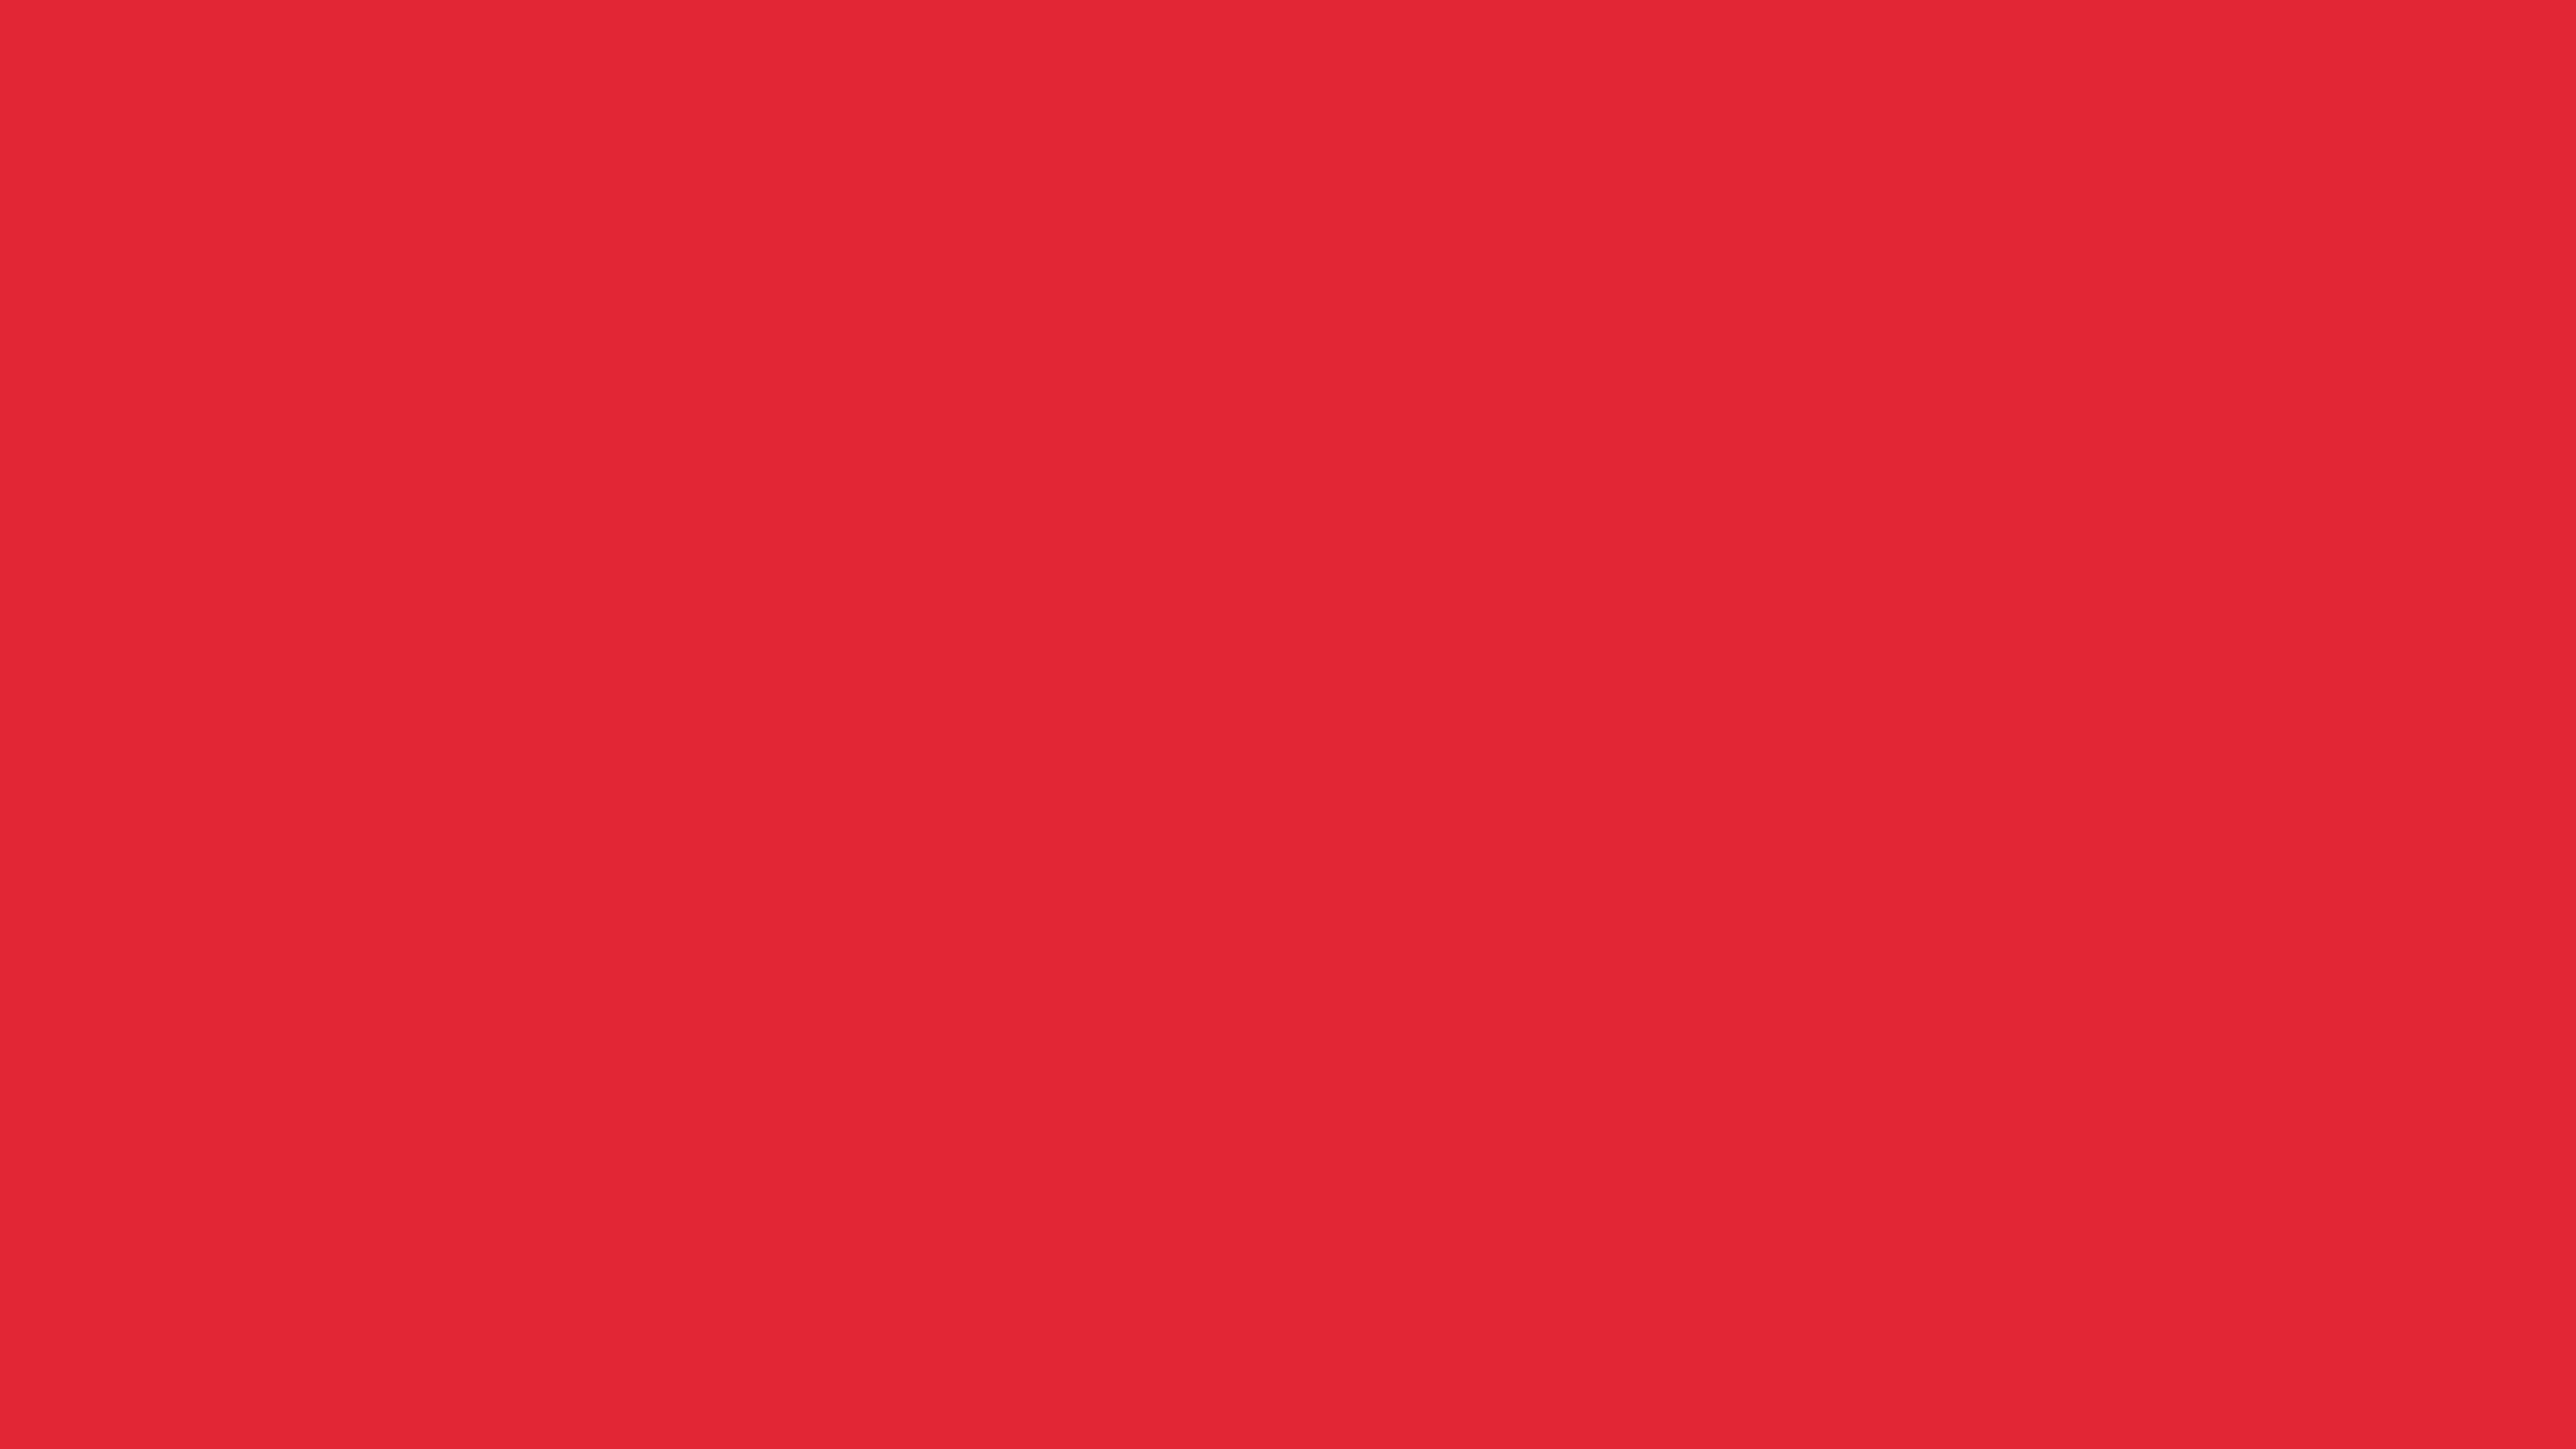 4096x2304 Alizarin Crimson Solid Color Background